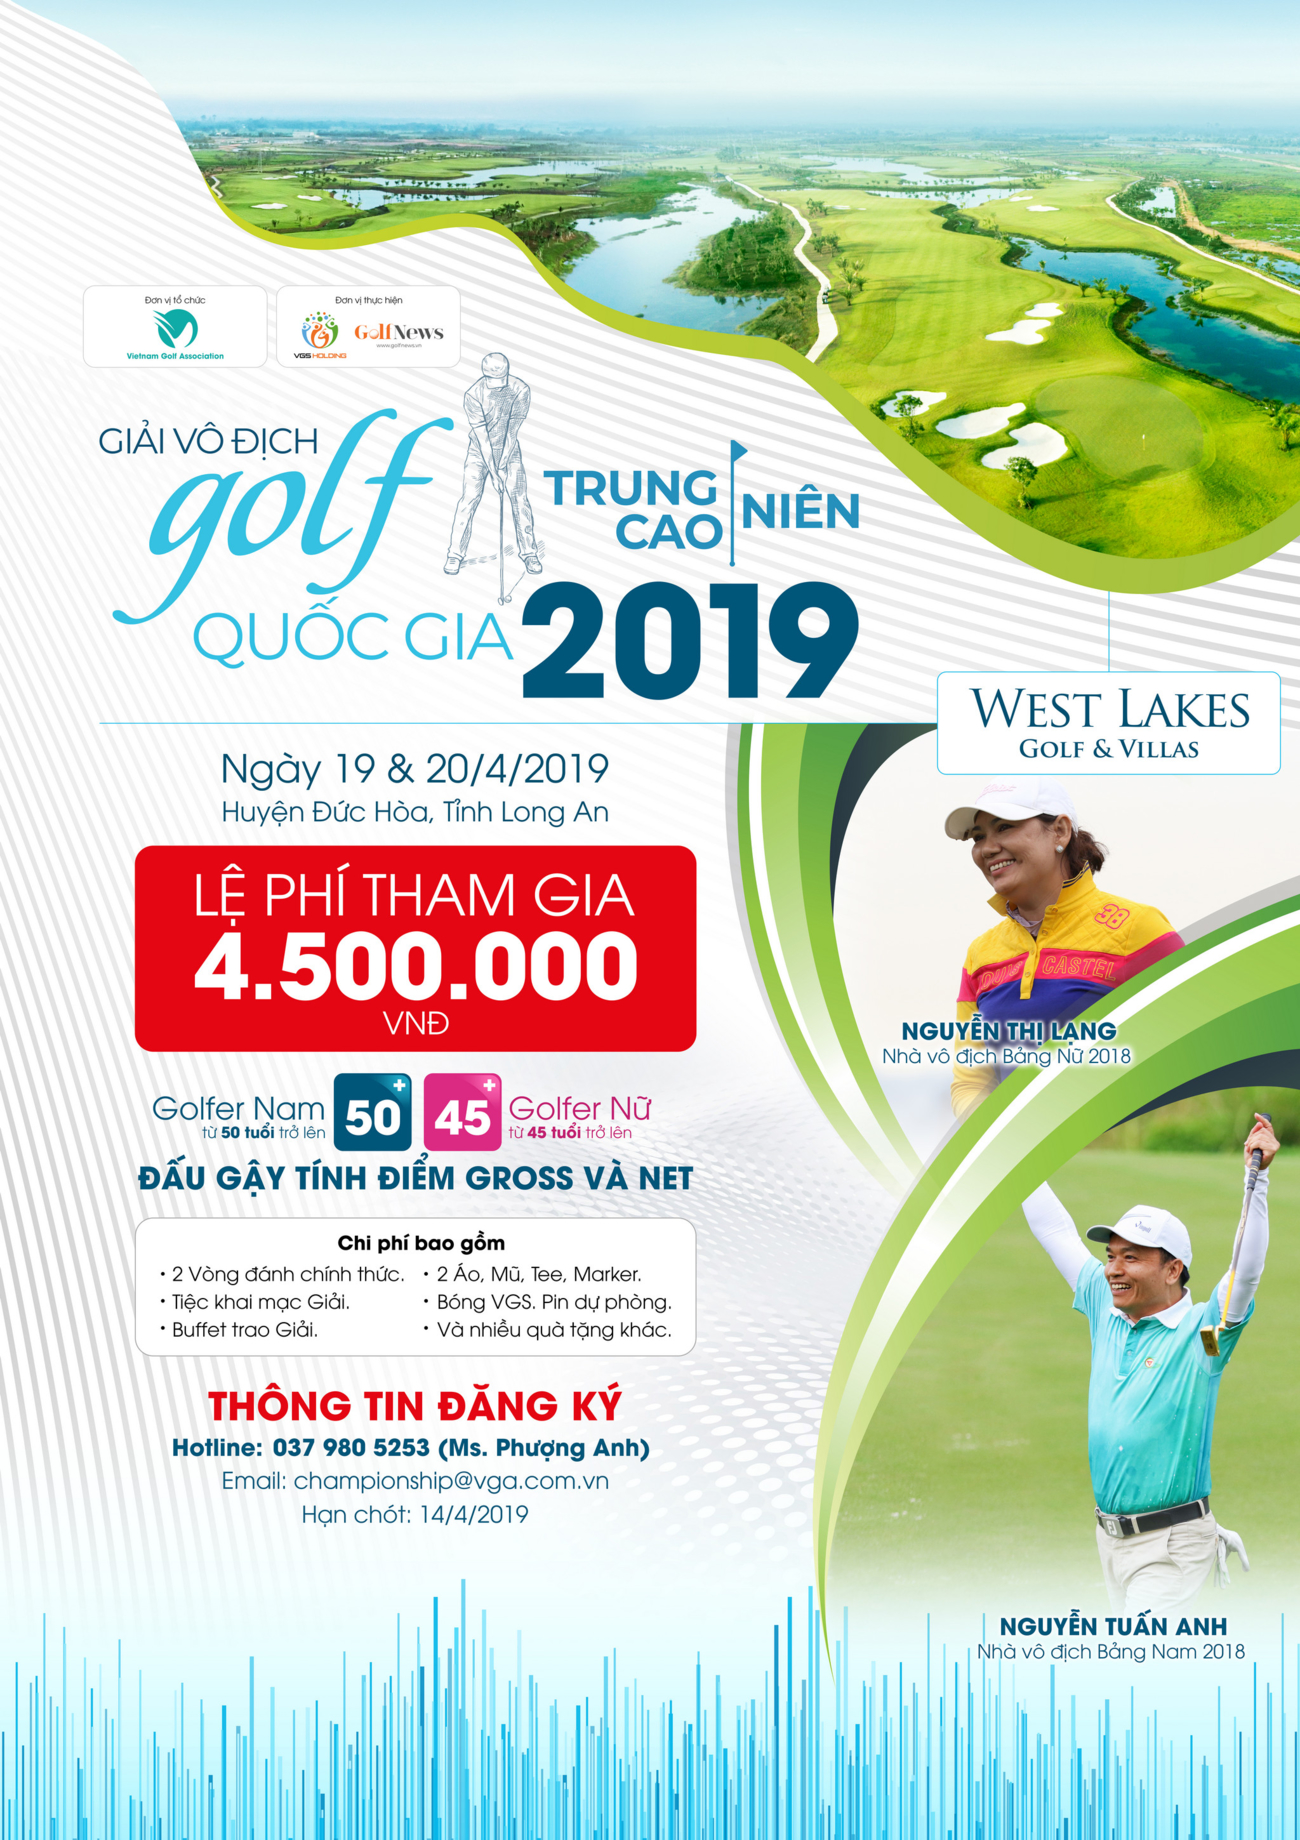 Giải Vô địch Golf Trung-Cao niên Quốc gia 2019 thu hút các golfer đăng ký tranh tài